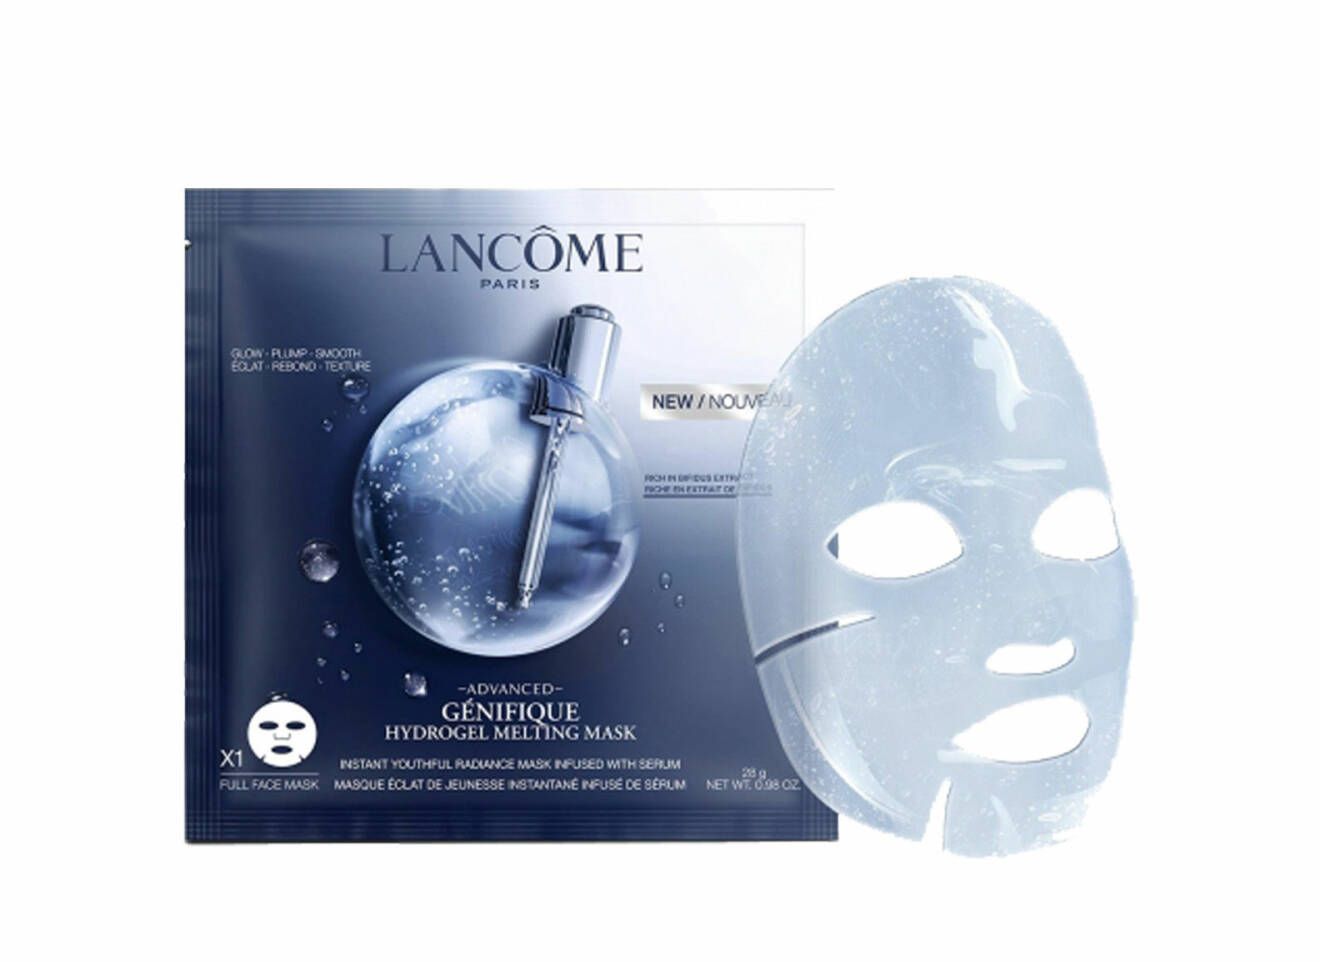 Vinnande sheet mask från Lancôme. 